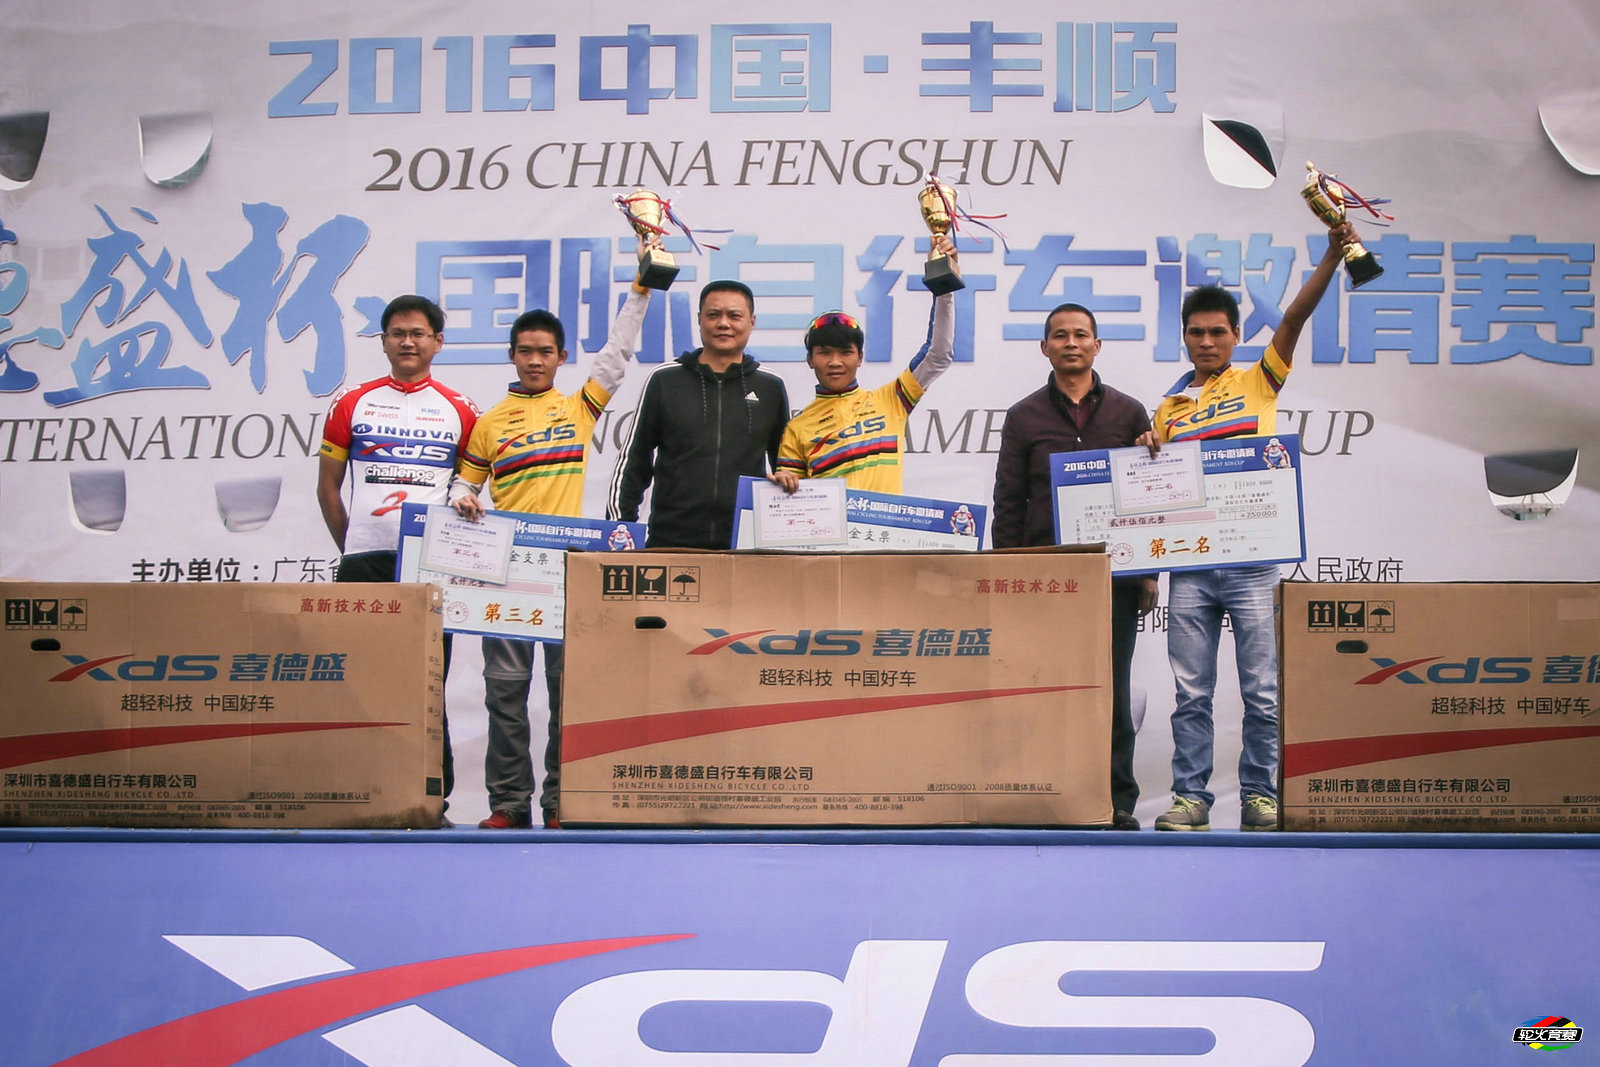 72 2016中国·丰顺 喜德盛杯 国际自行车邀请赛